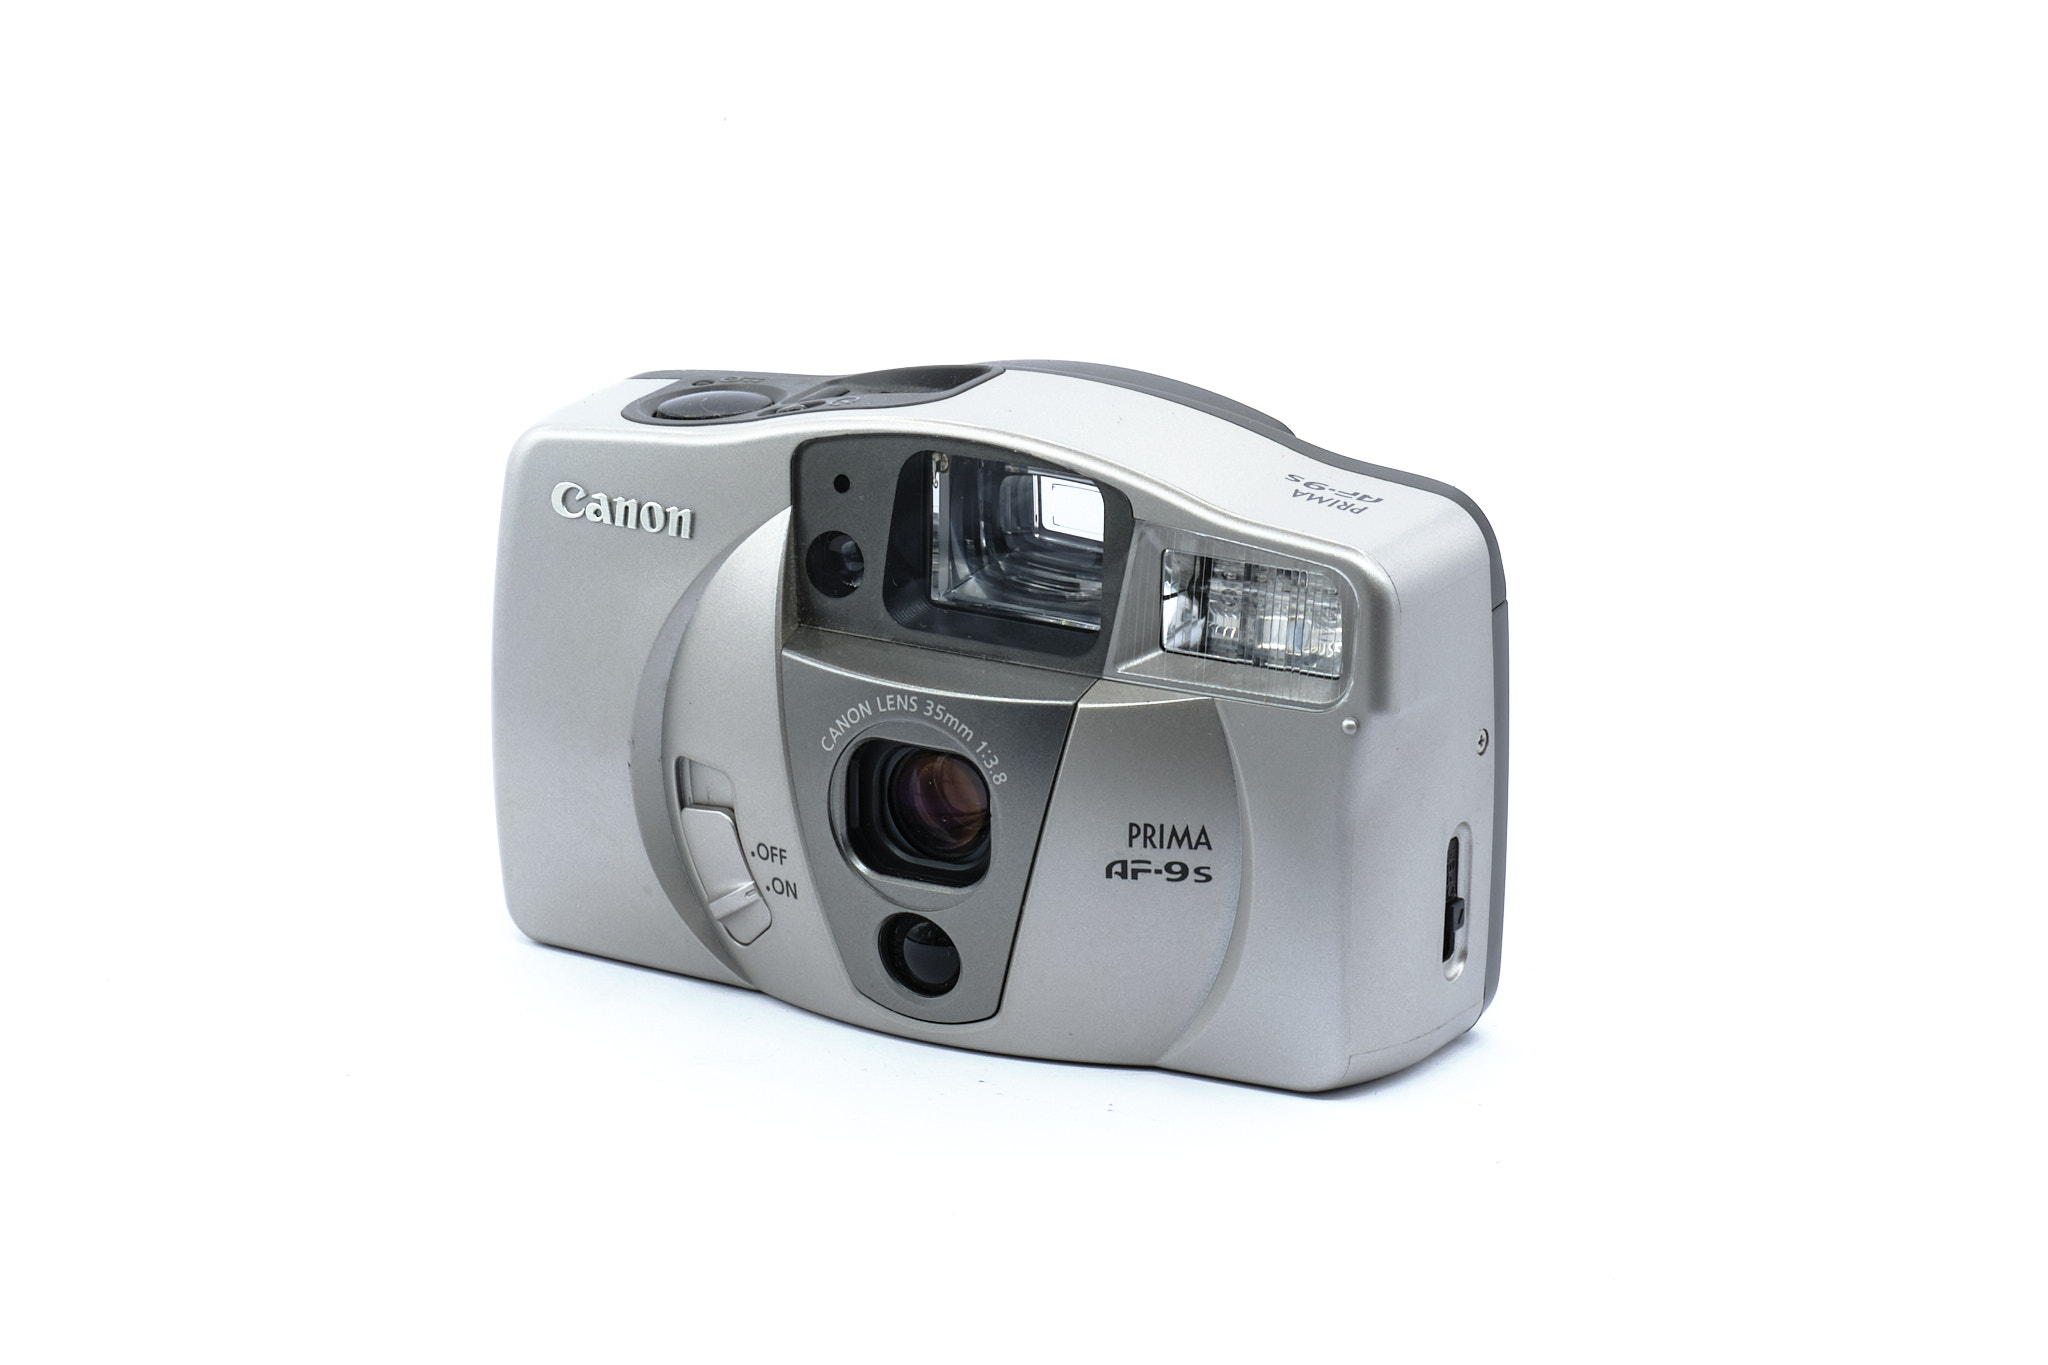 Canon eos 500n - Canon 22-55mm f/4-4,5 USM - PELLOCHE-MOI